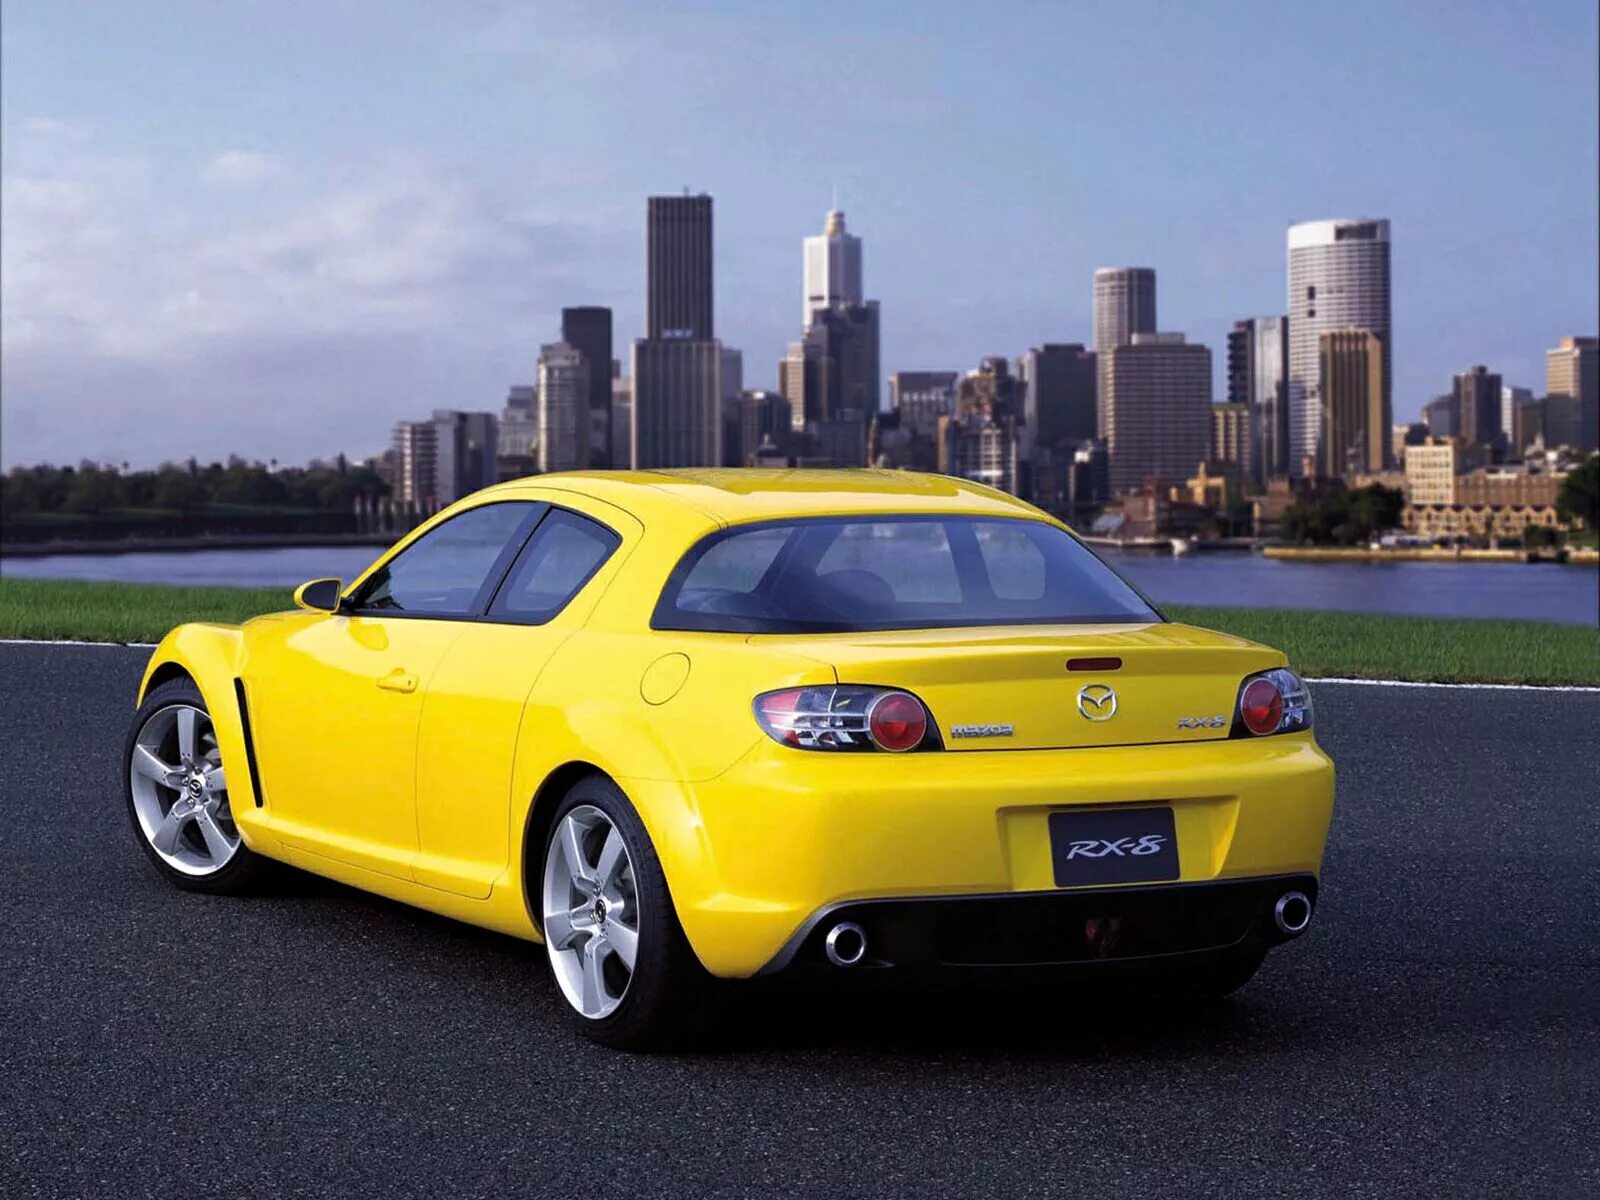 Фото машины 8. Mazda rx8 Yellow. Мазда rx8 желтая. Mazda rx8 2021. Машина Mazda RX-8.